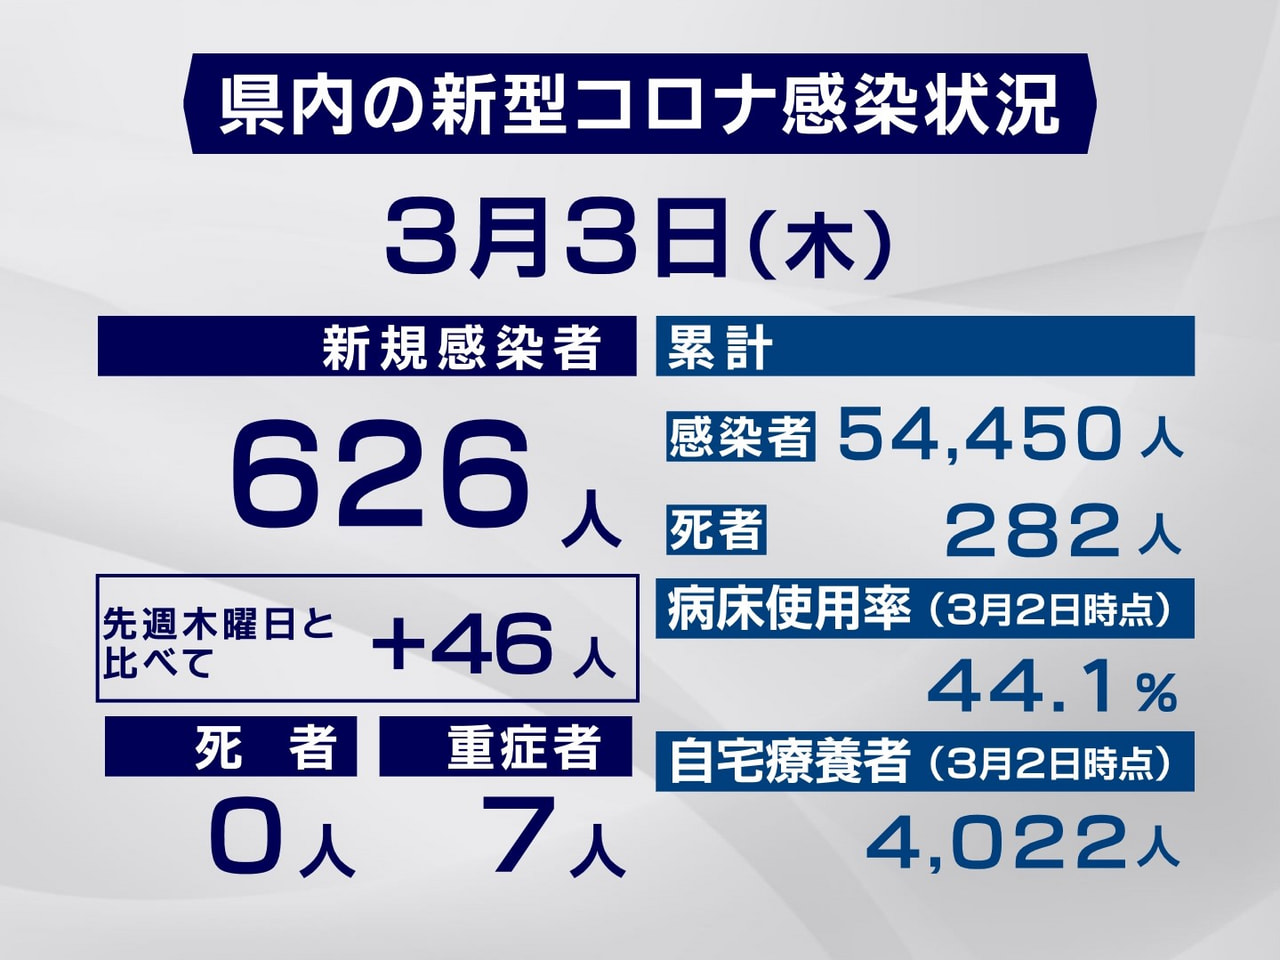 岐阜県は３日、新型コロナウイルスの感染者が新たに６２６人確認されたと発表しました...